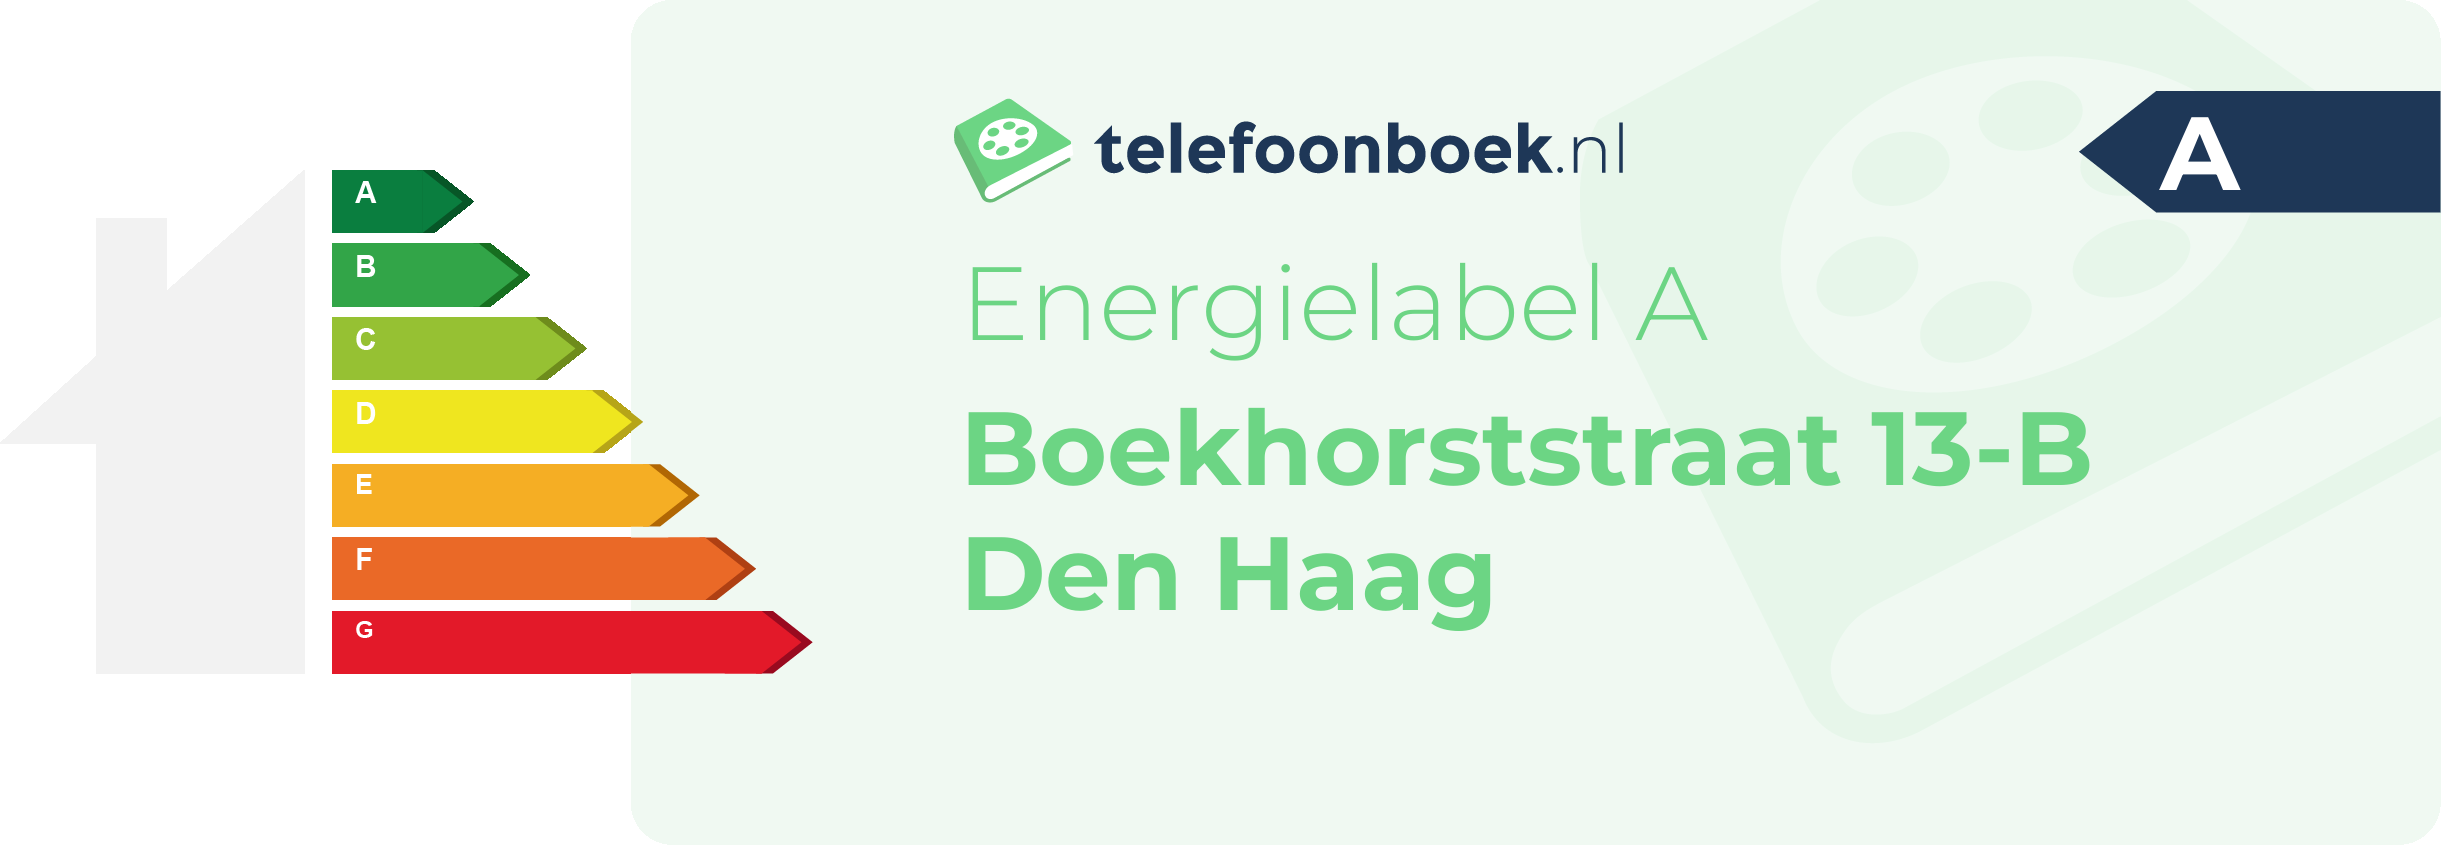 Energielabel Boekhorststraat 13-B Den Haag